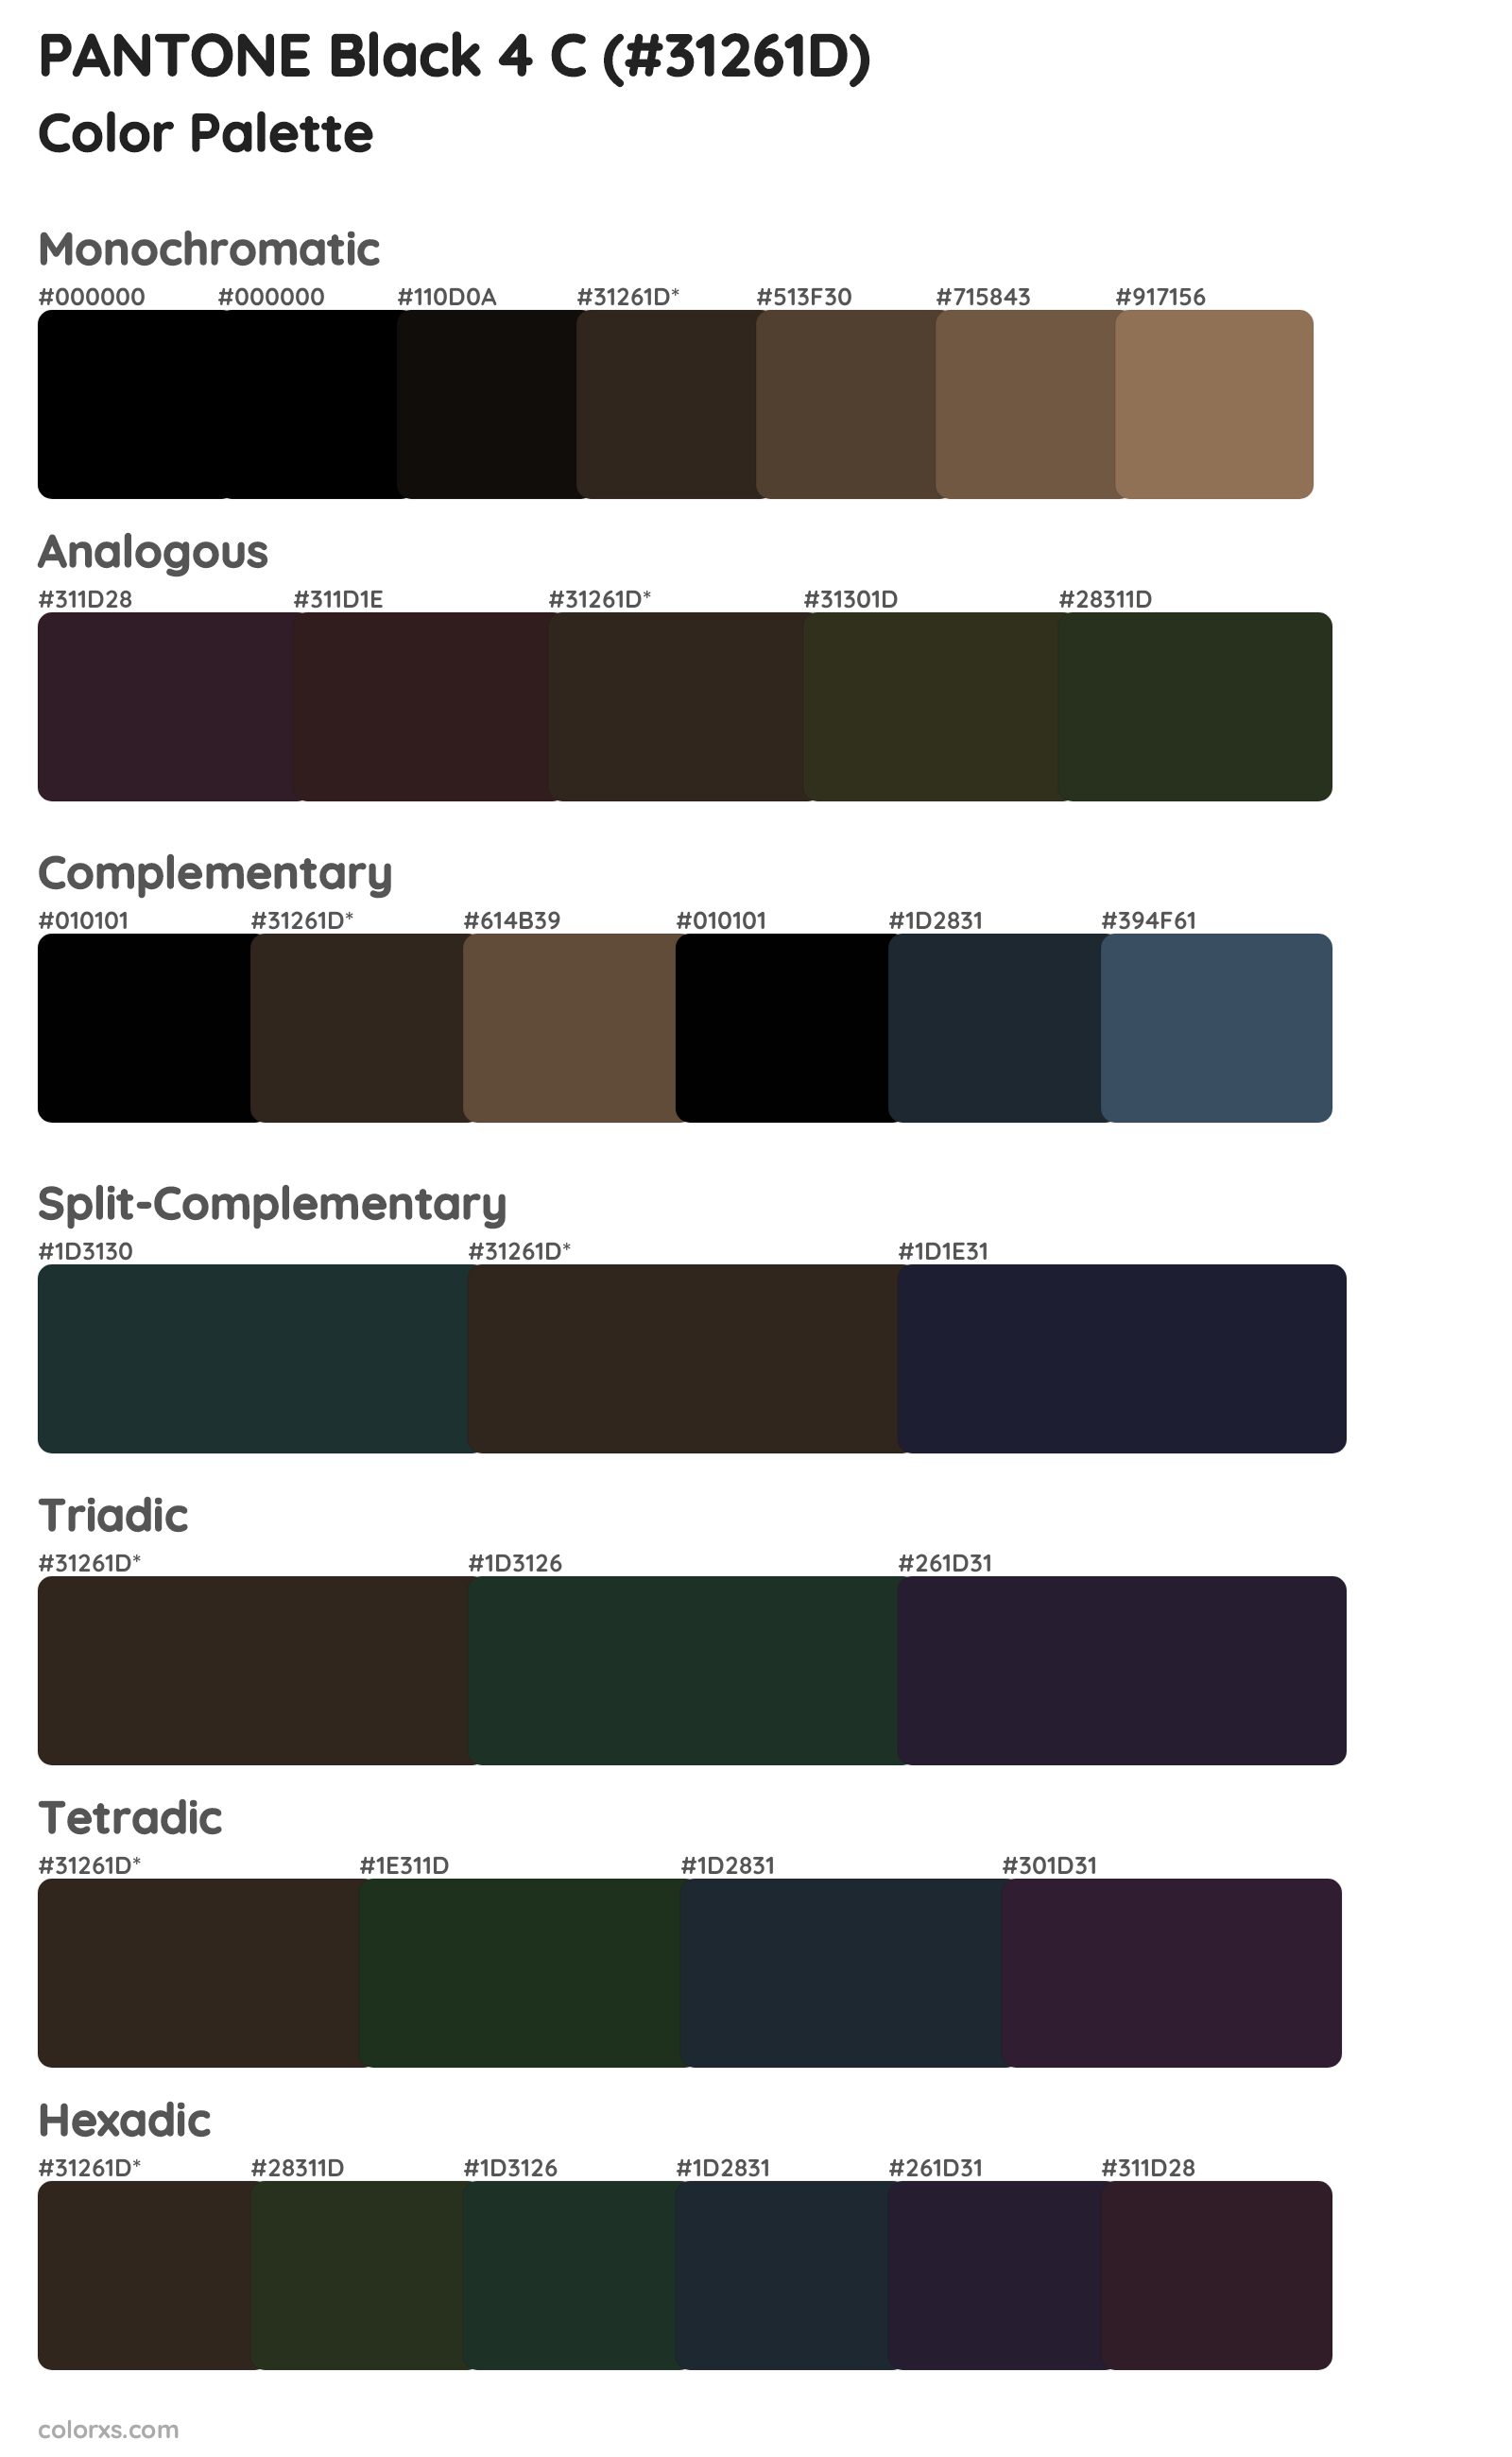 PANTONE Black 4 C Color Scheme Palettes